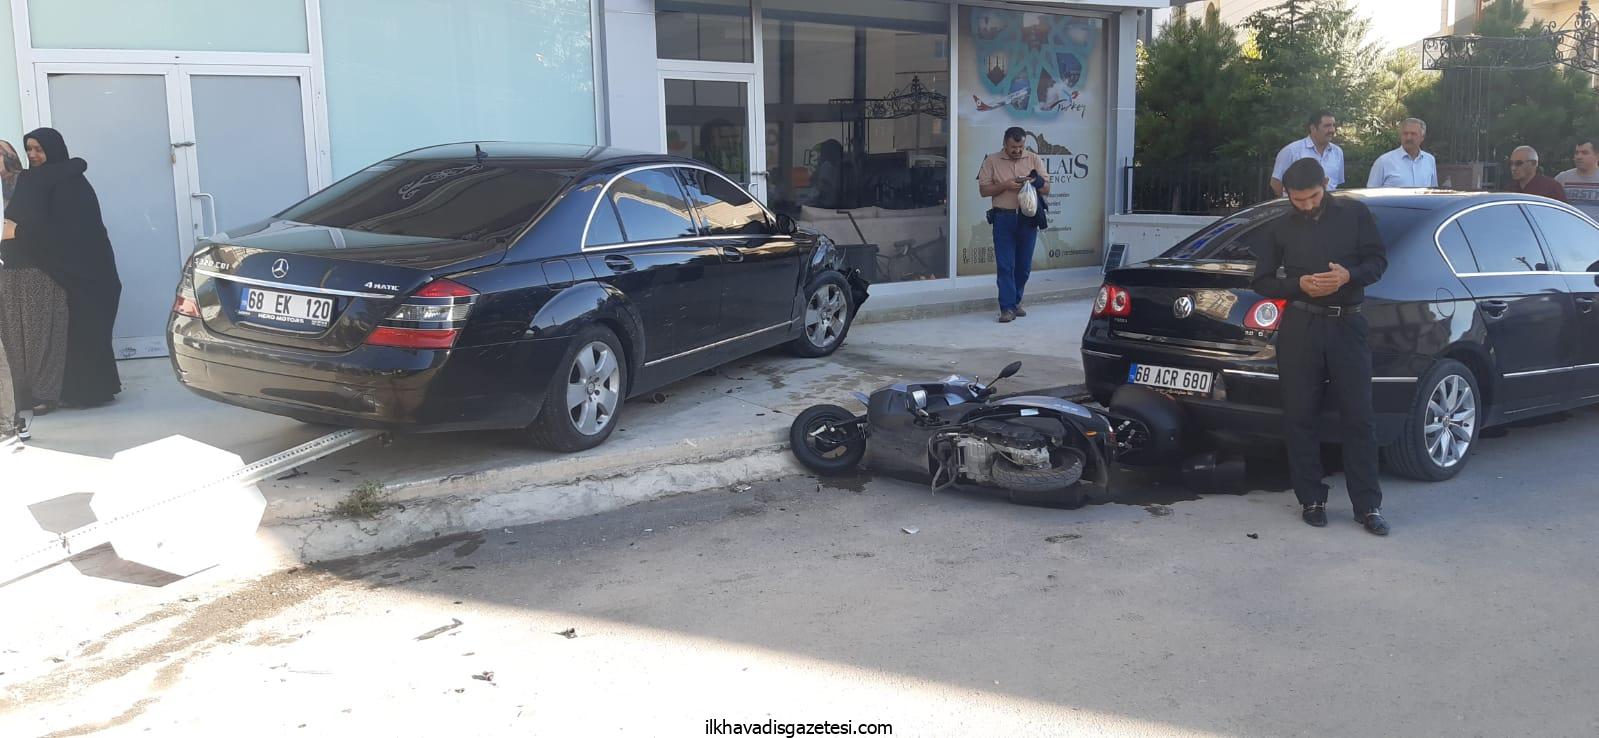 Aksaray’da Lüks otomobil 2 araç ve elektrikli araca çarptı 4 yaralı